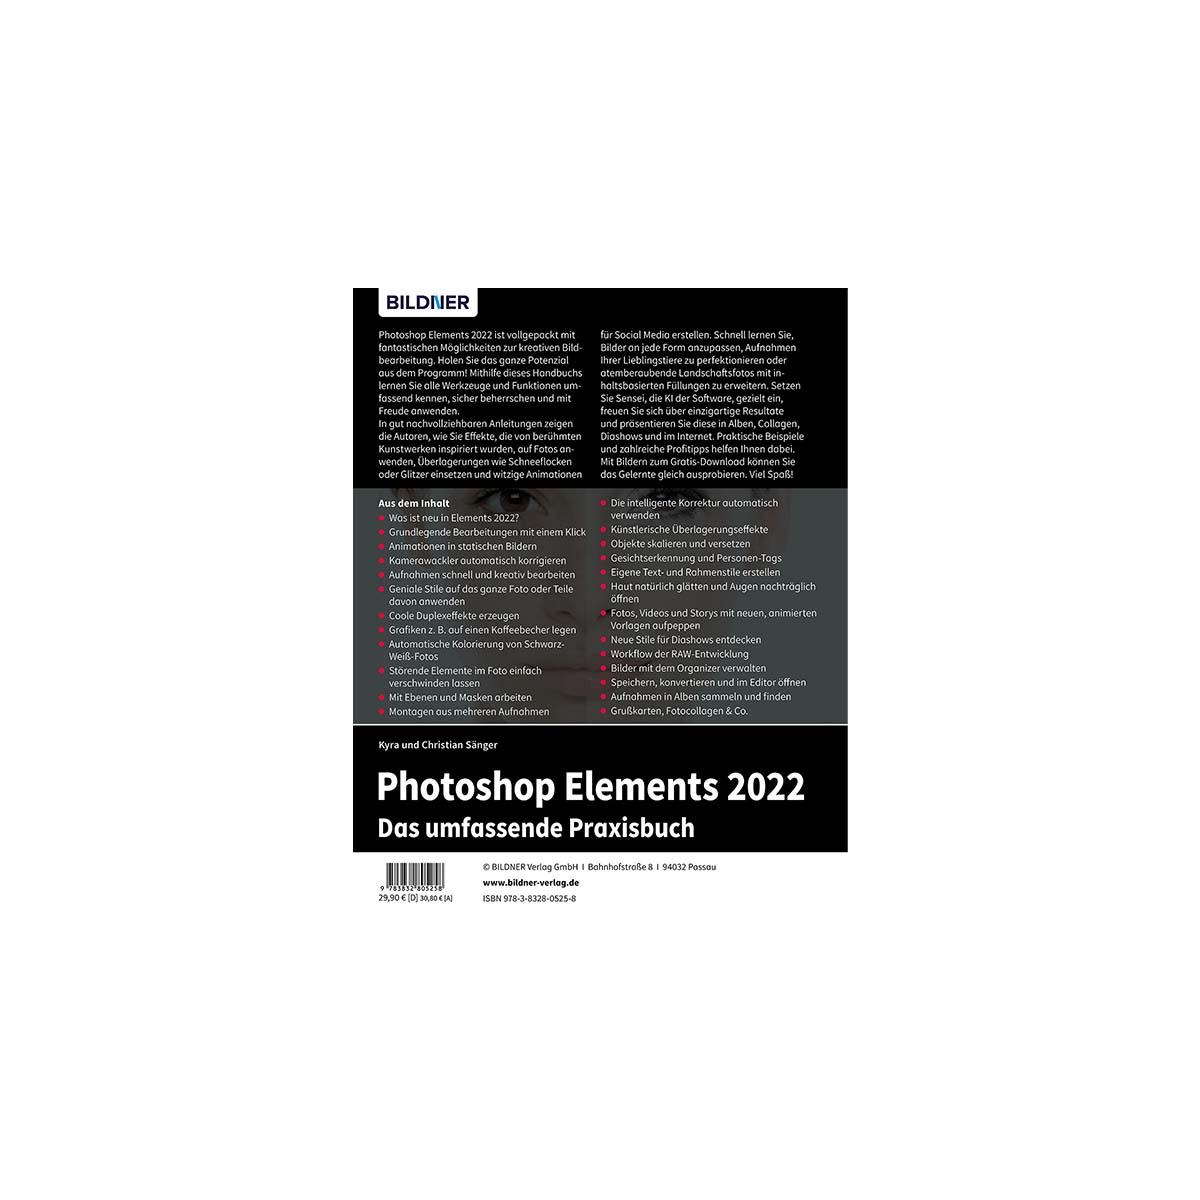 Das Photoshop Elements umfangreiche 2022 Praxisbuch! -